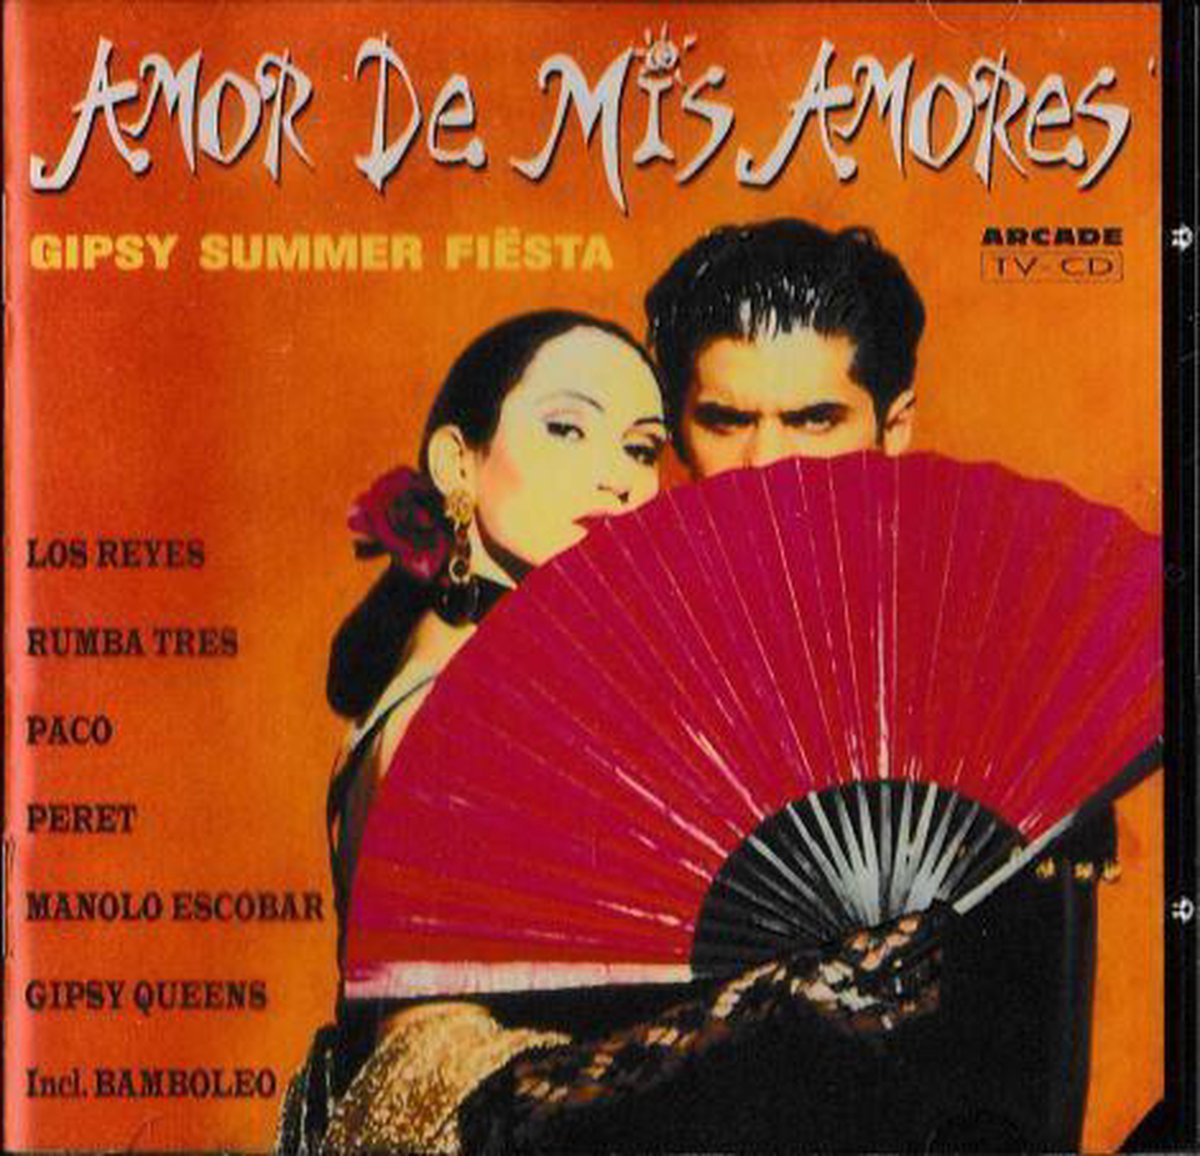 Amor de mis amores - Paco, Rumba Tres, Peret, Los Reyes, Gitano Boys